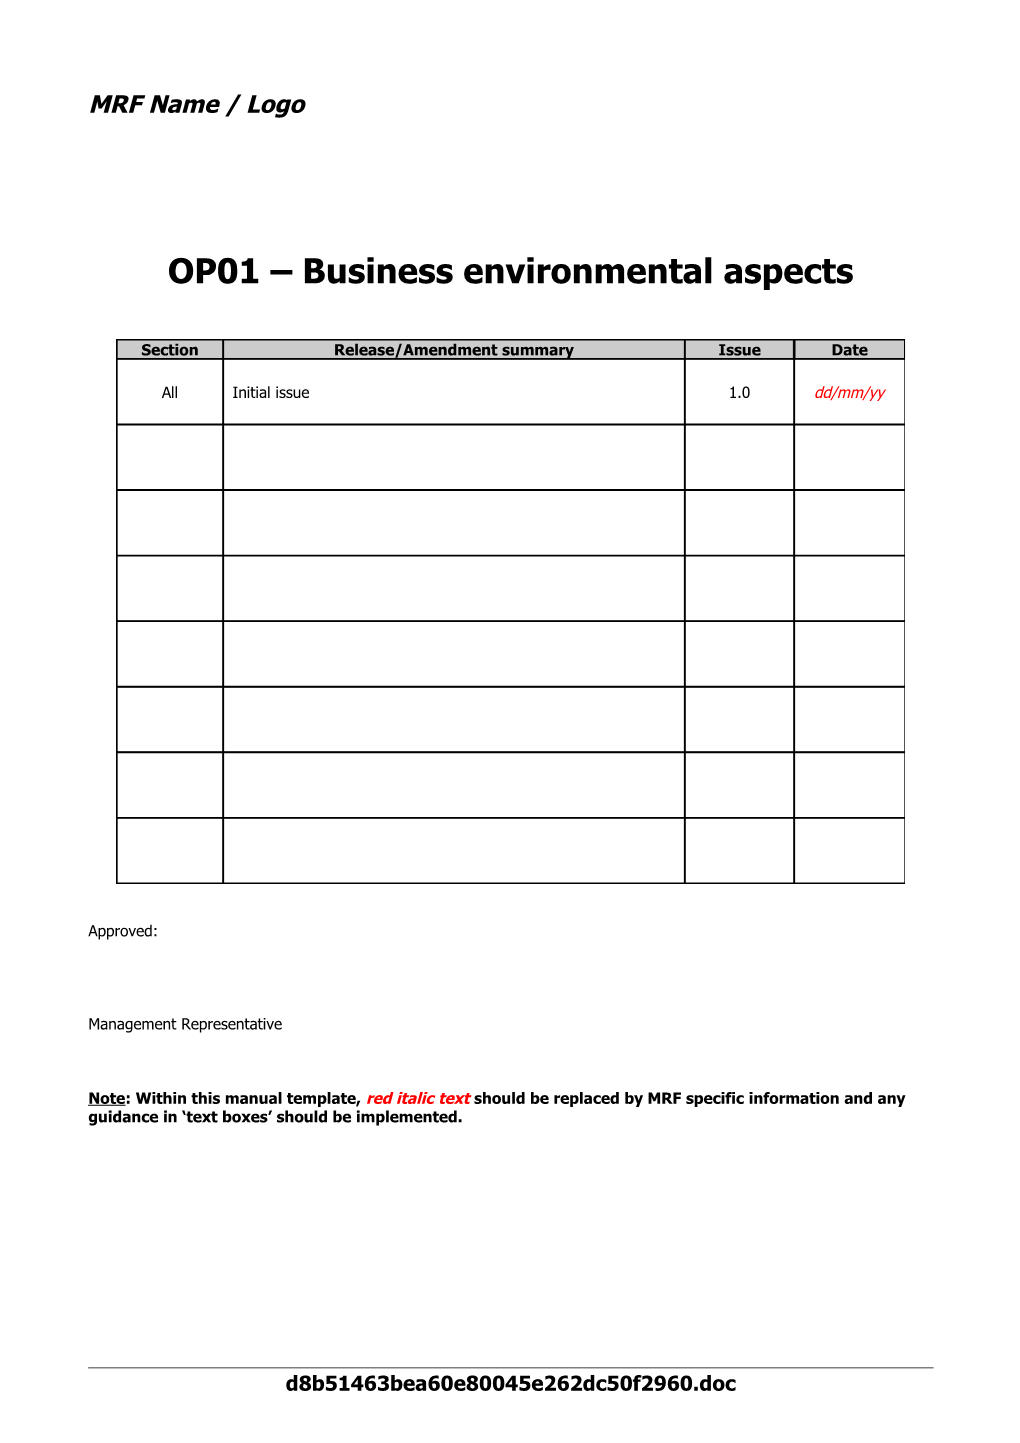 OP01 Business Environmental Aspects